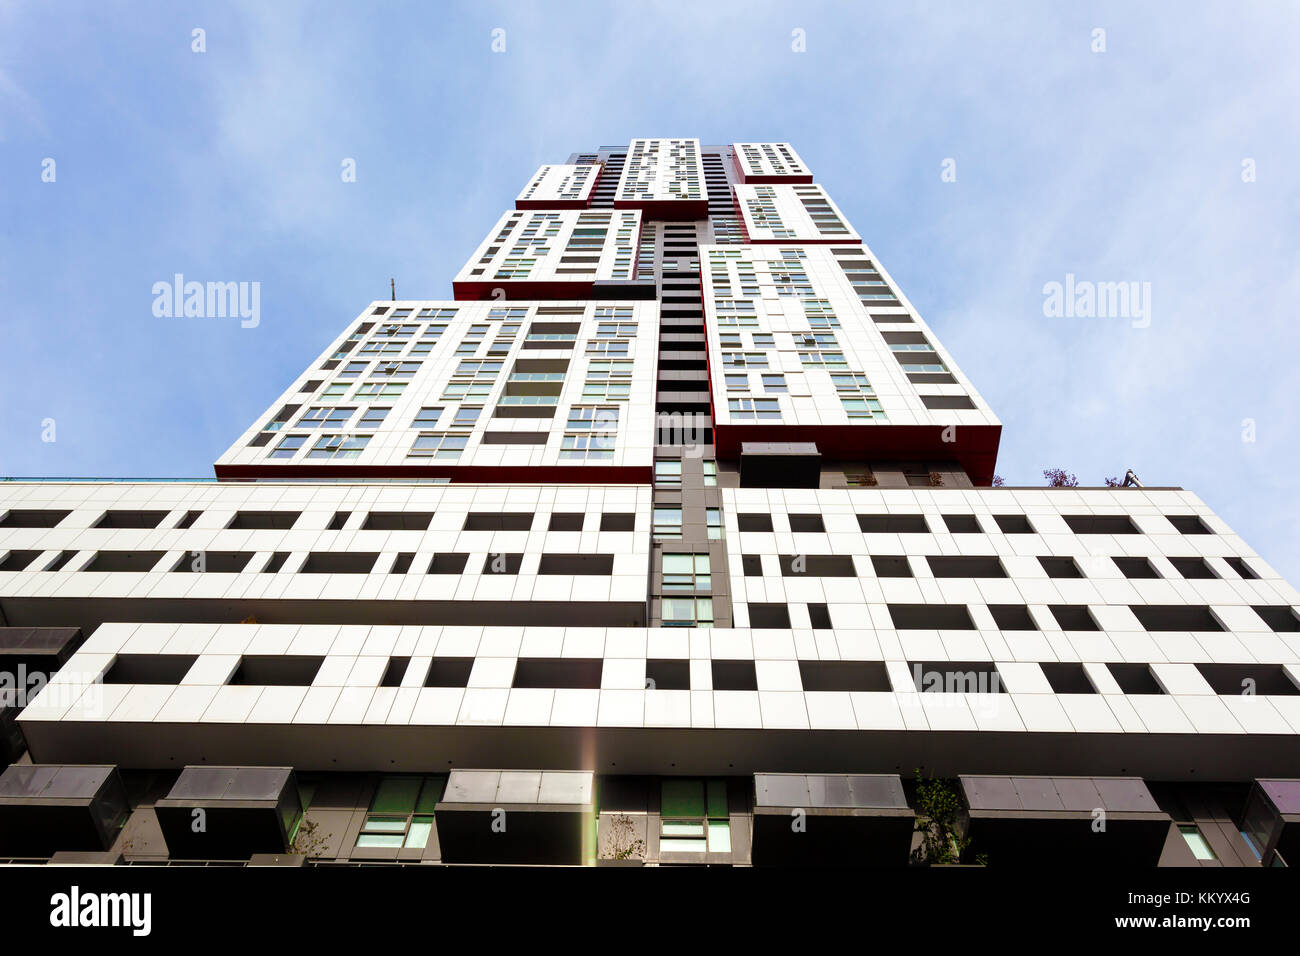 Alto edificio residencial contemporáneo en la ciudad Foto de stock